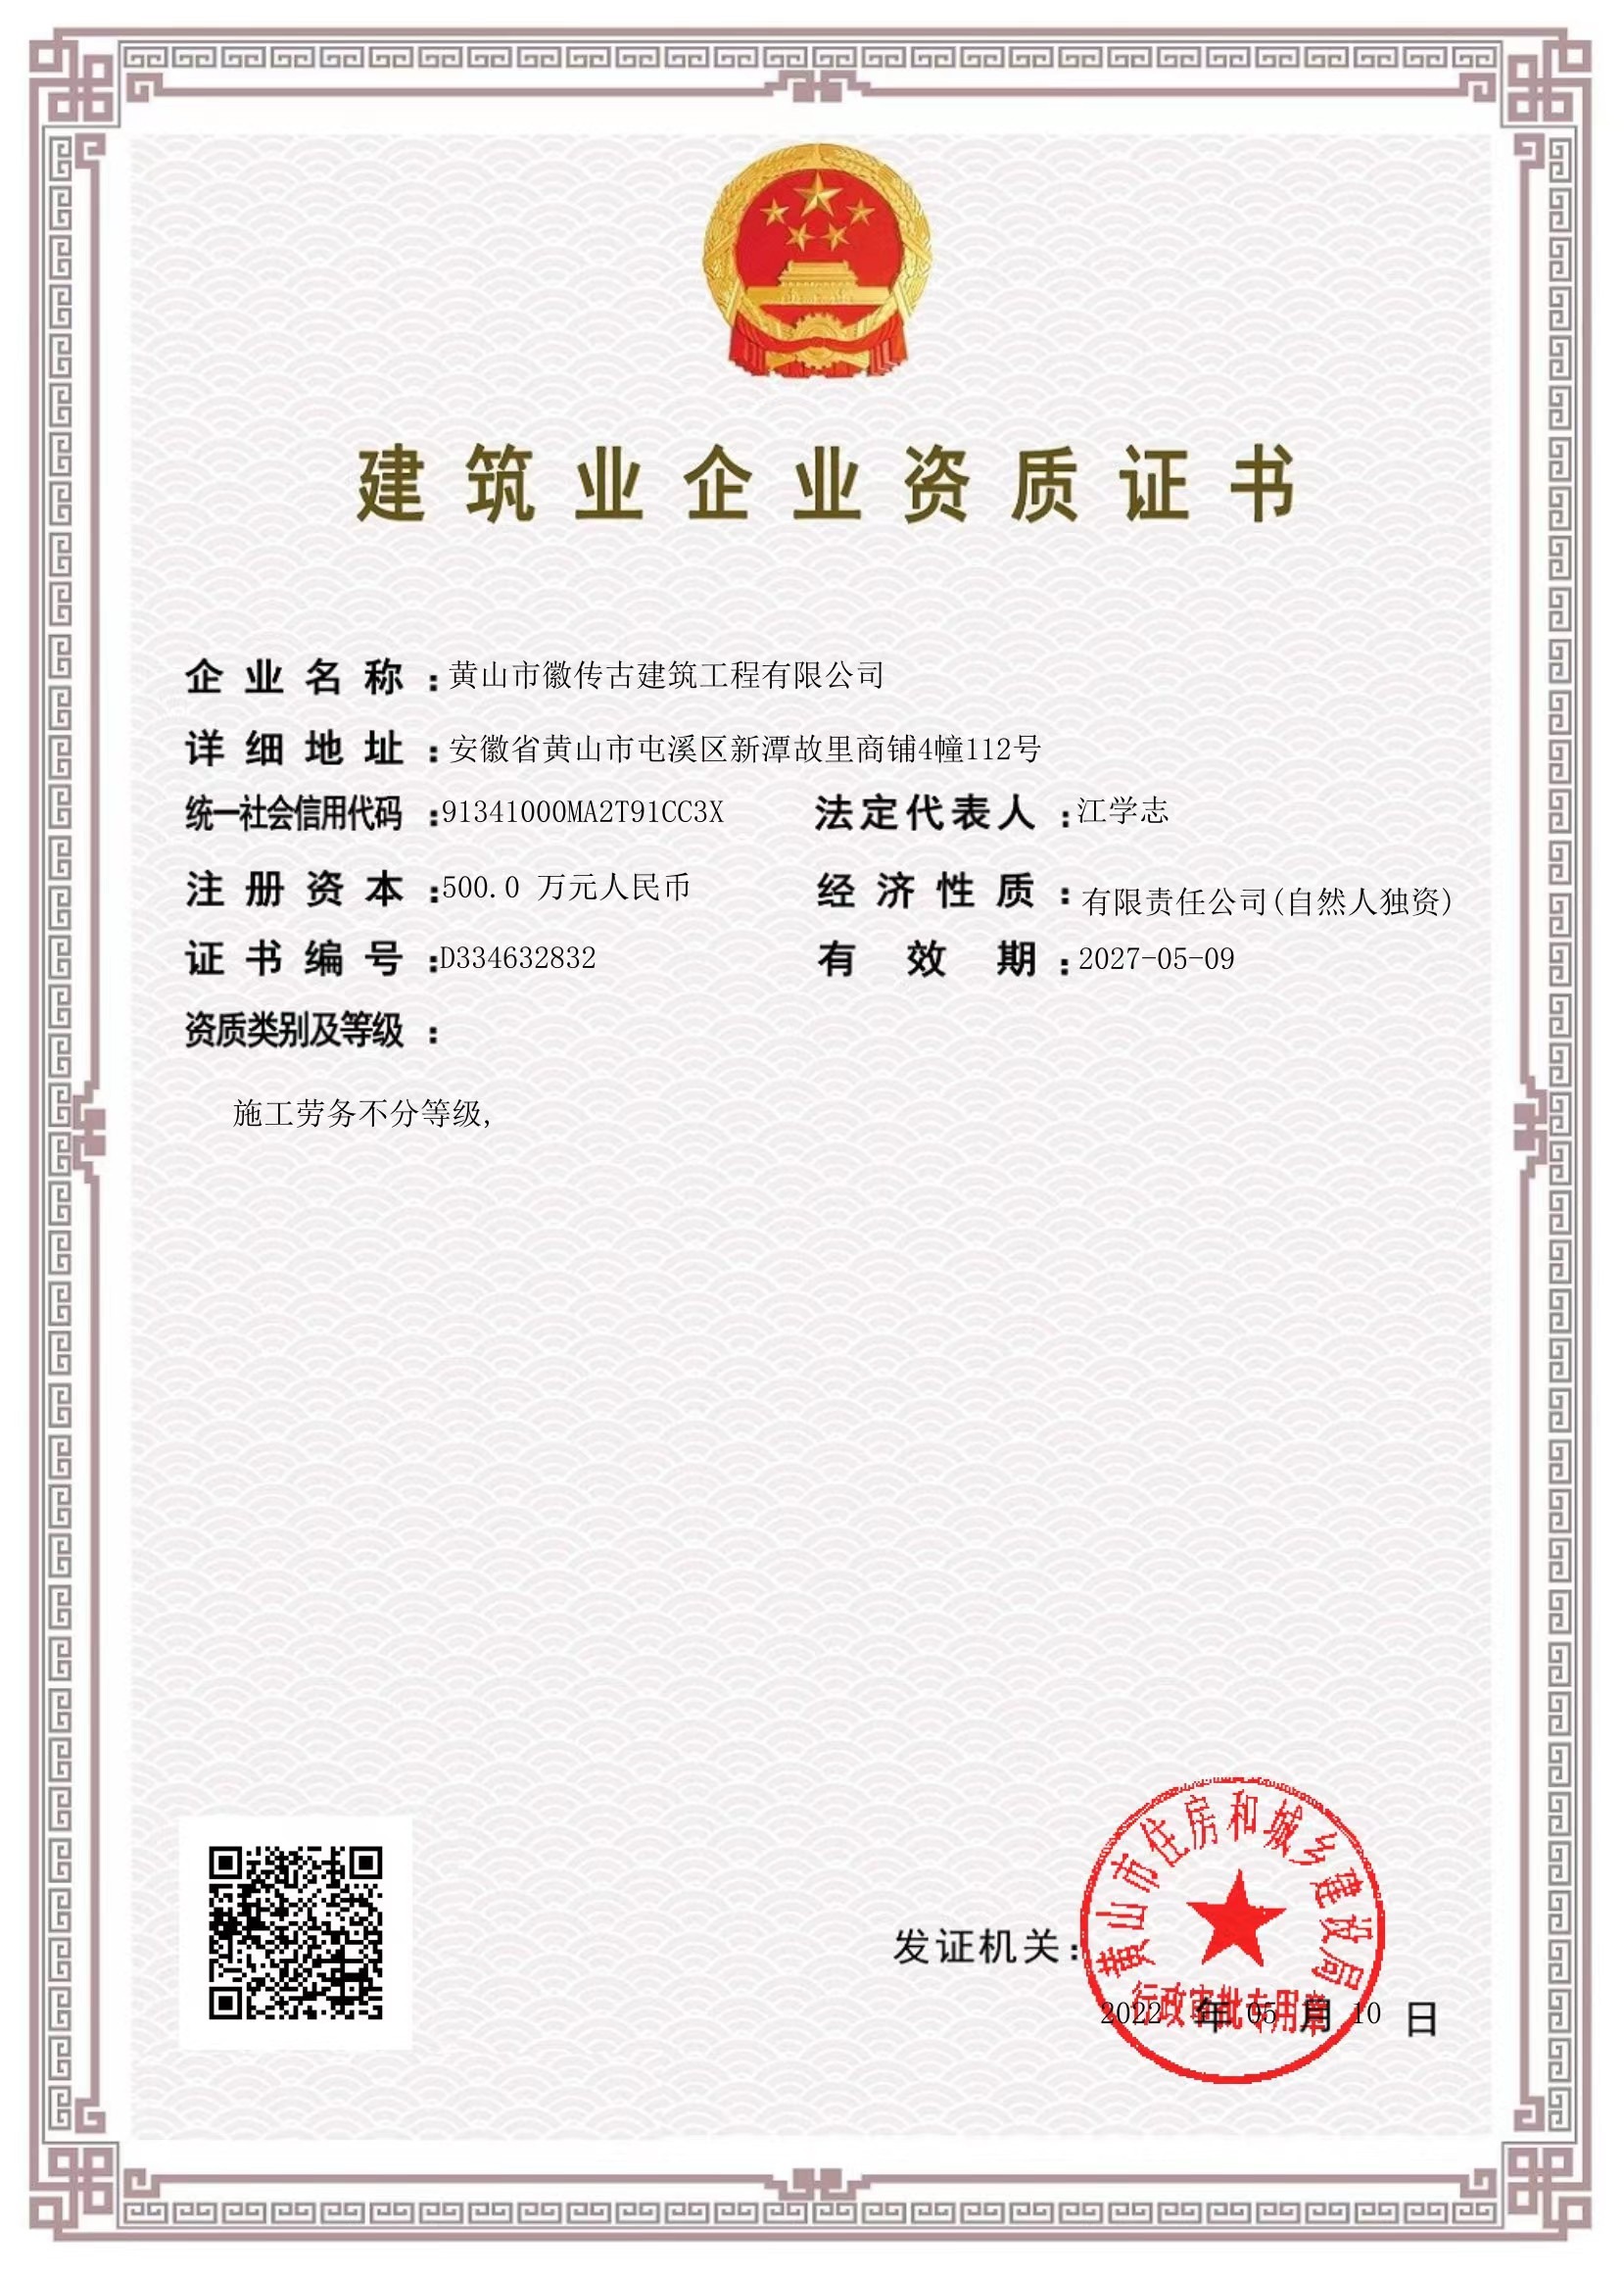 黄山市徽传古建筑工程有限公司建筑业企业资质证书